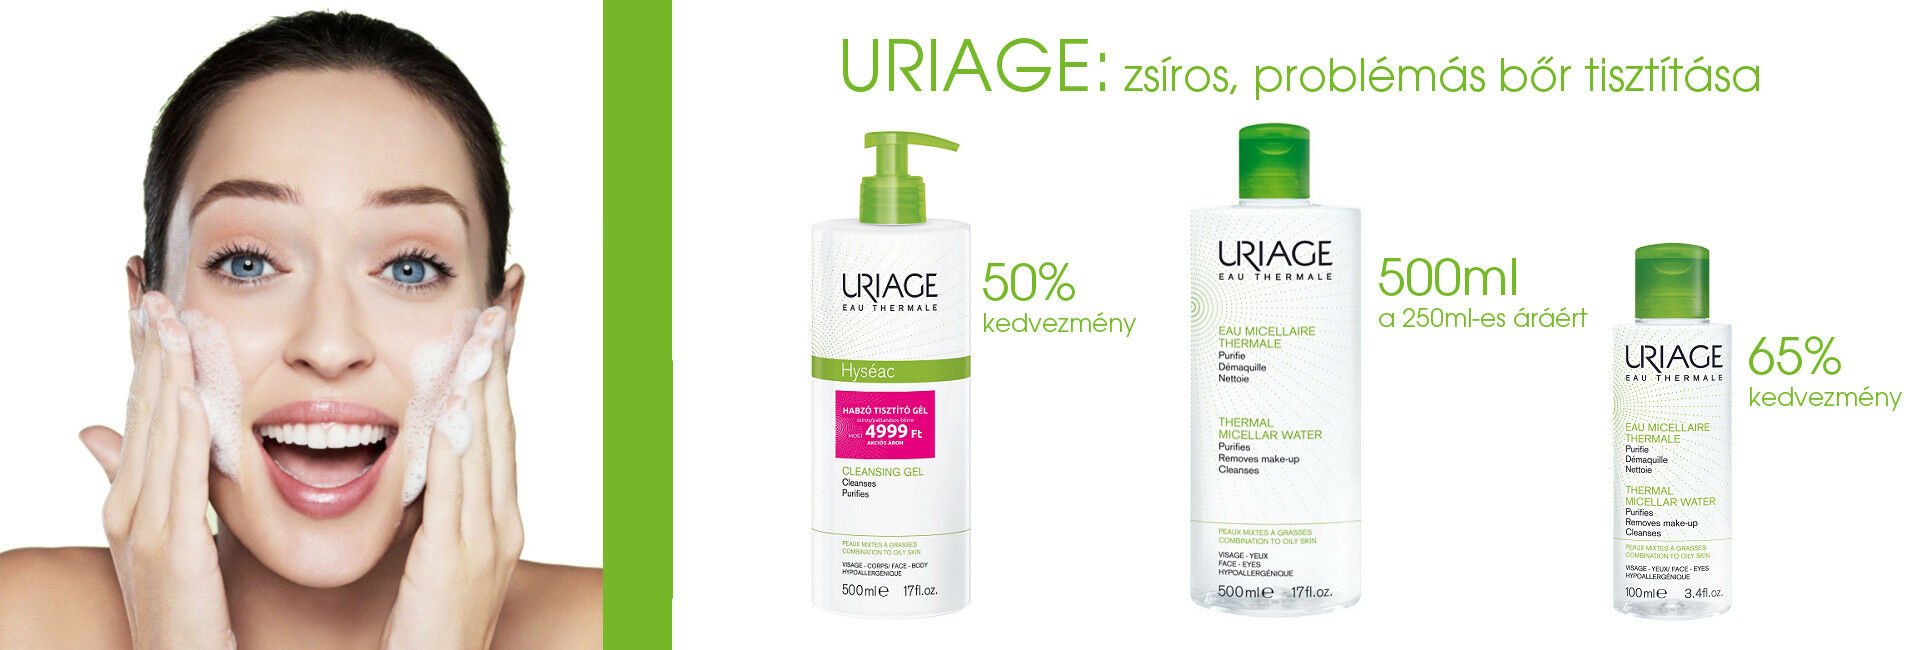 Zsíros, problémás bőr tisztítása Uriage termékekkel akár 65% kedvezménnyel!